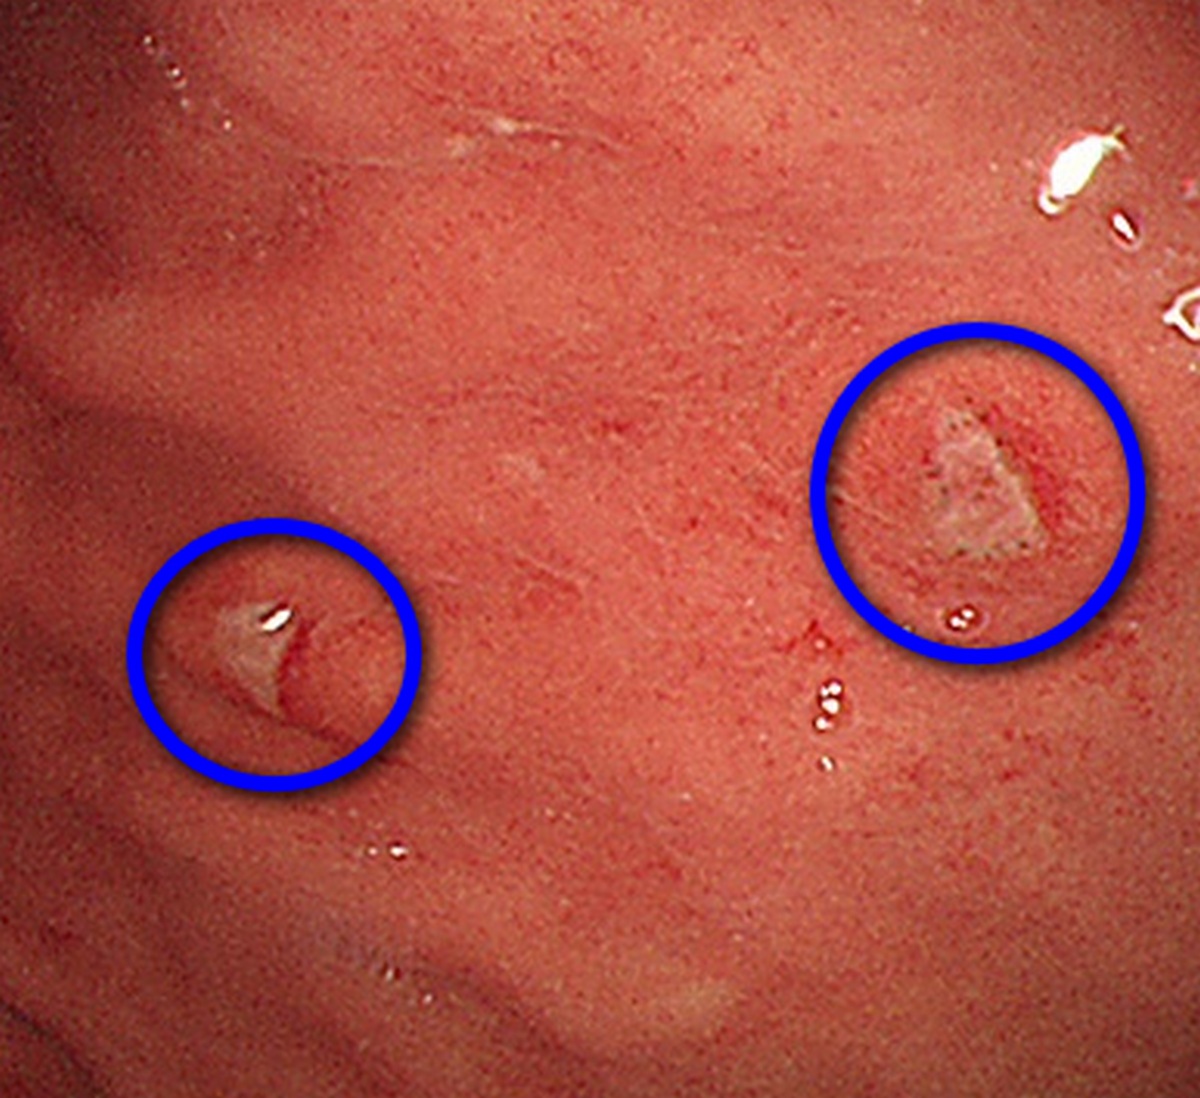 结肠癌粪便图片 潜血图片